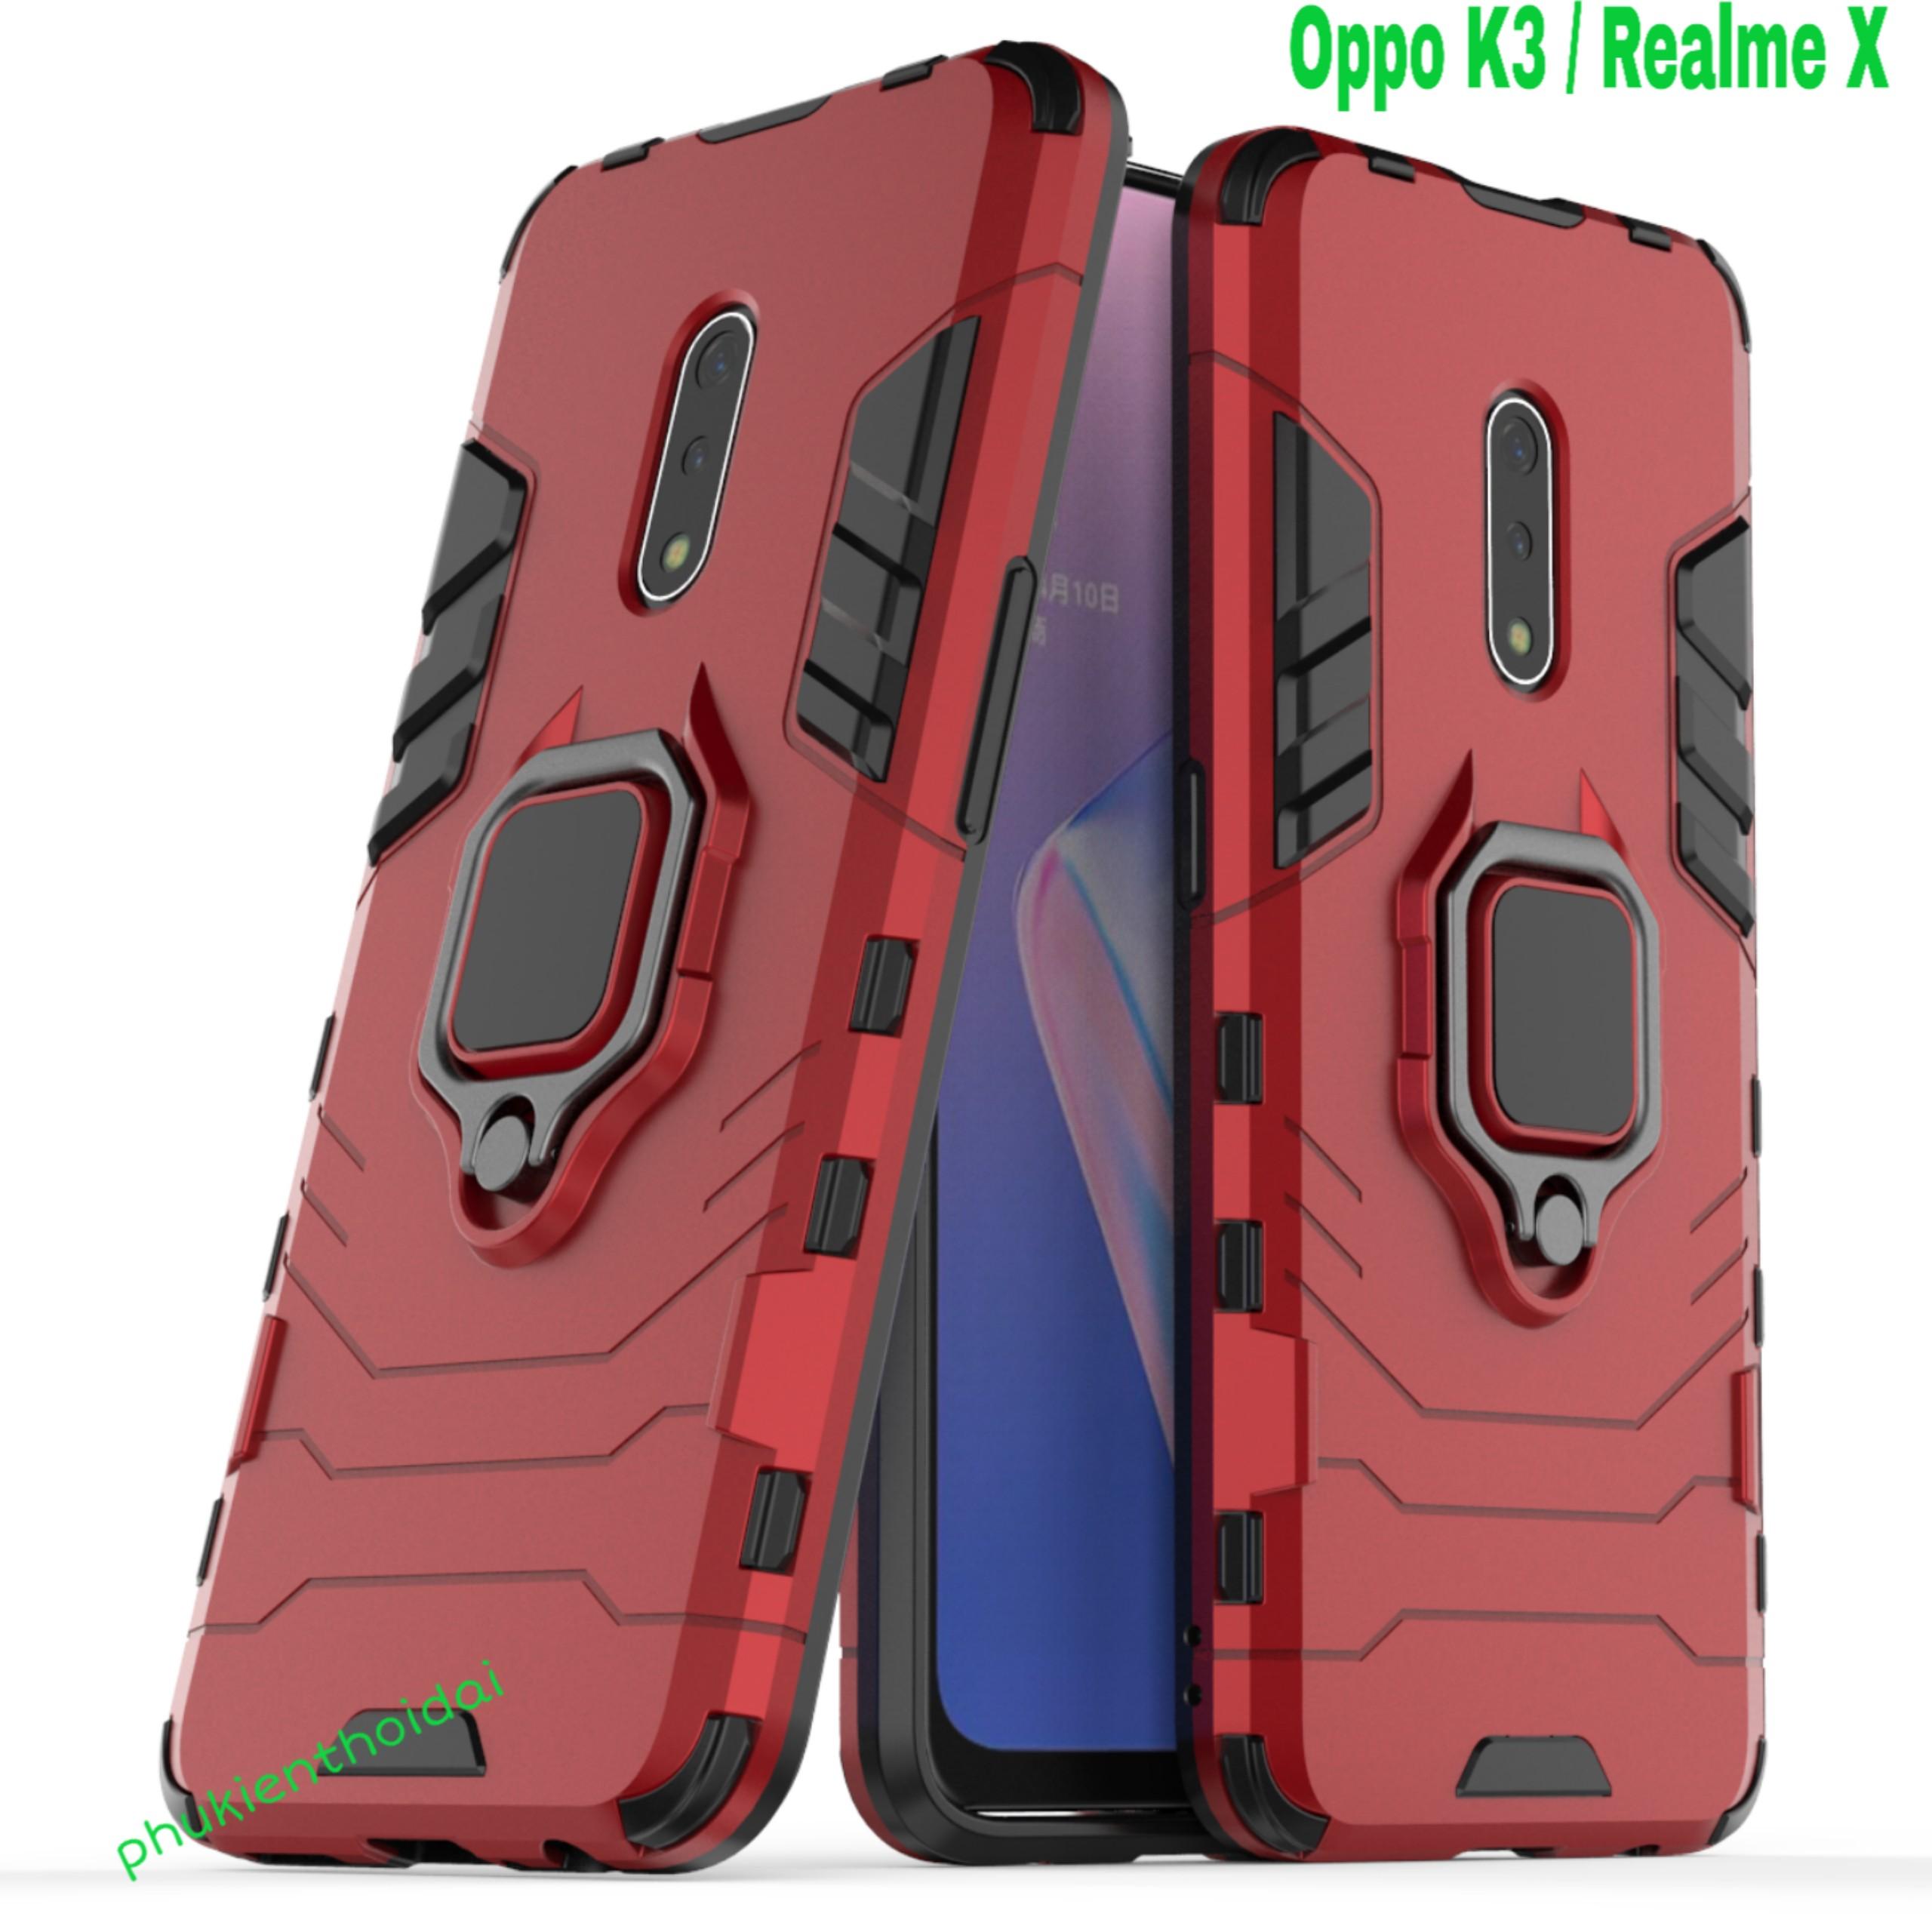 Ốp lưng Iron Man Iring cho Oppo K3 Realme X chống sốc cao cấp siêu bền